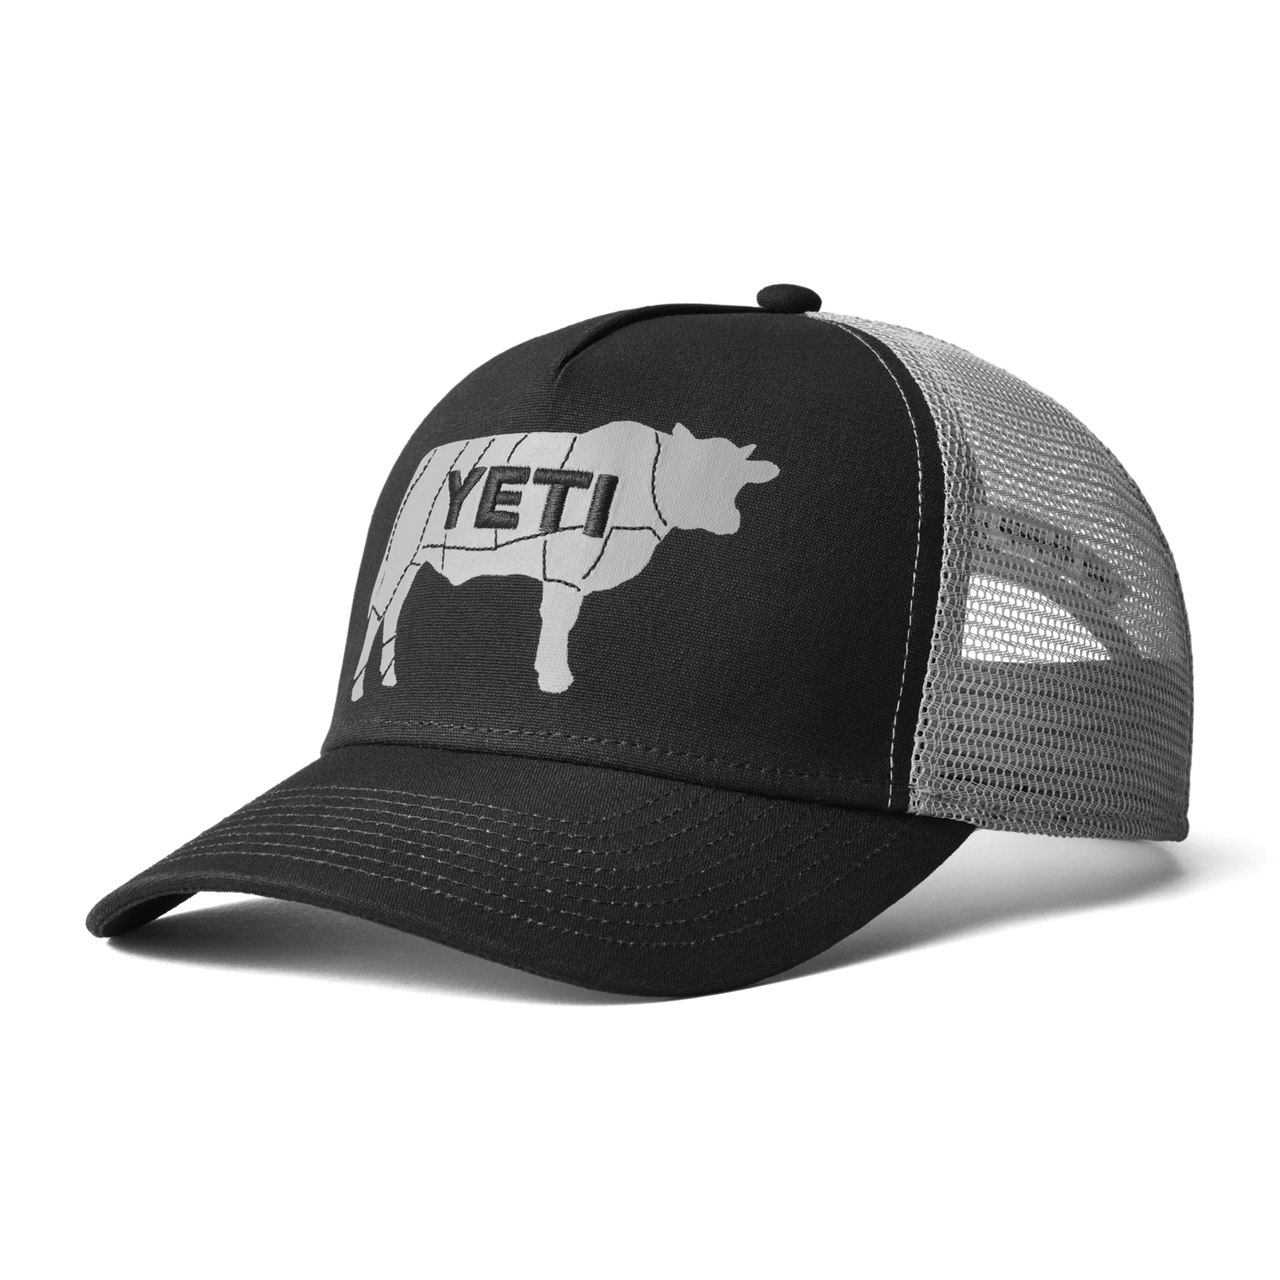 Yeti, Traditional Trucker Hat, Navy